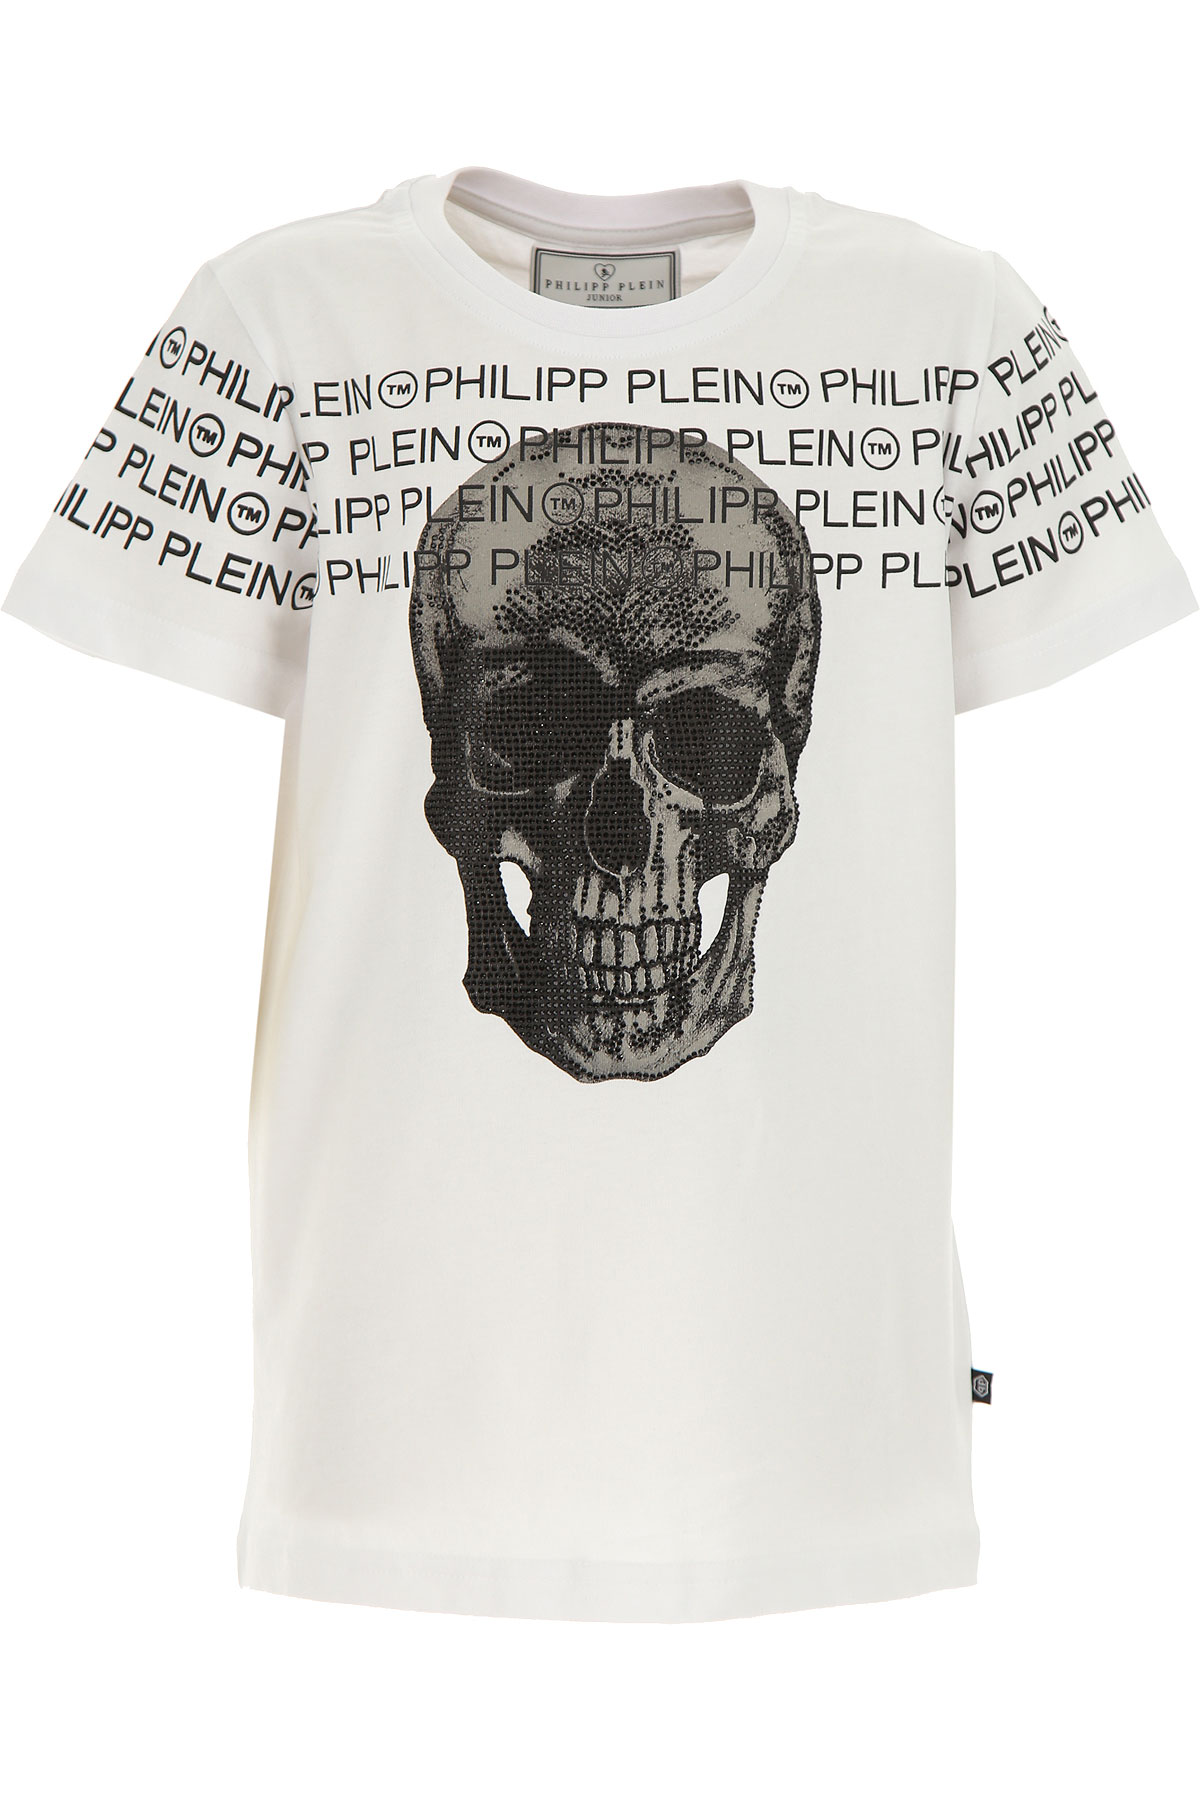 Philipp Plein Kinder T-Shirt für Jungen Günstig im Sale, Weiss, Baumwolle, 2017, 10Y 12Y 14Y 16Y 8Y